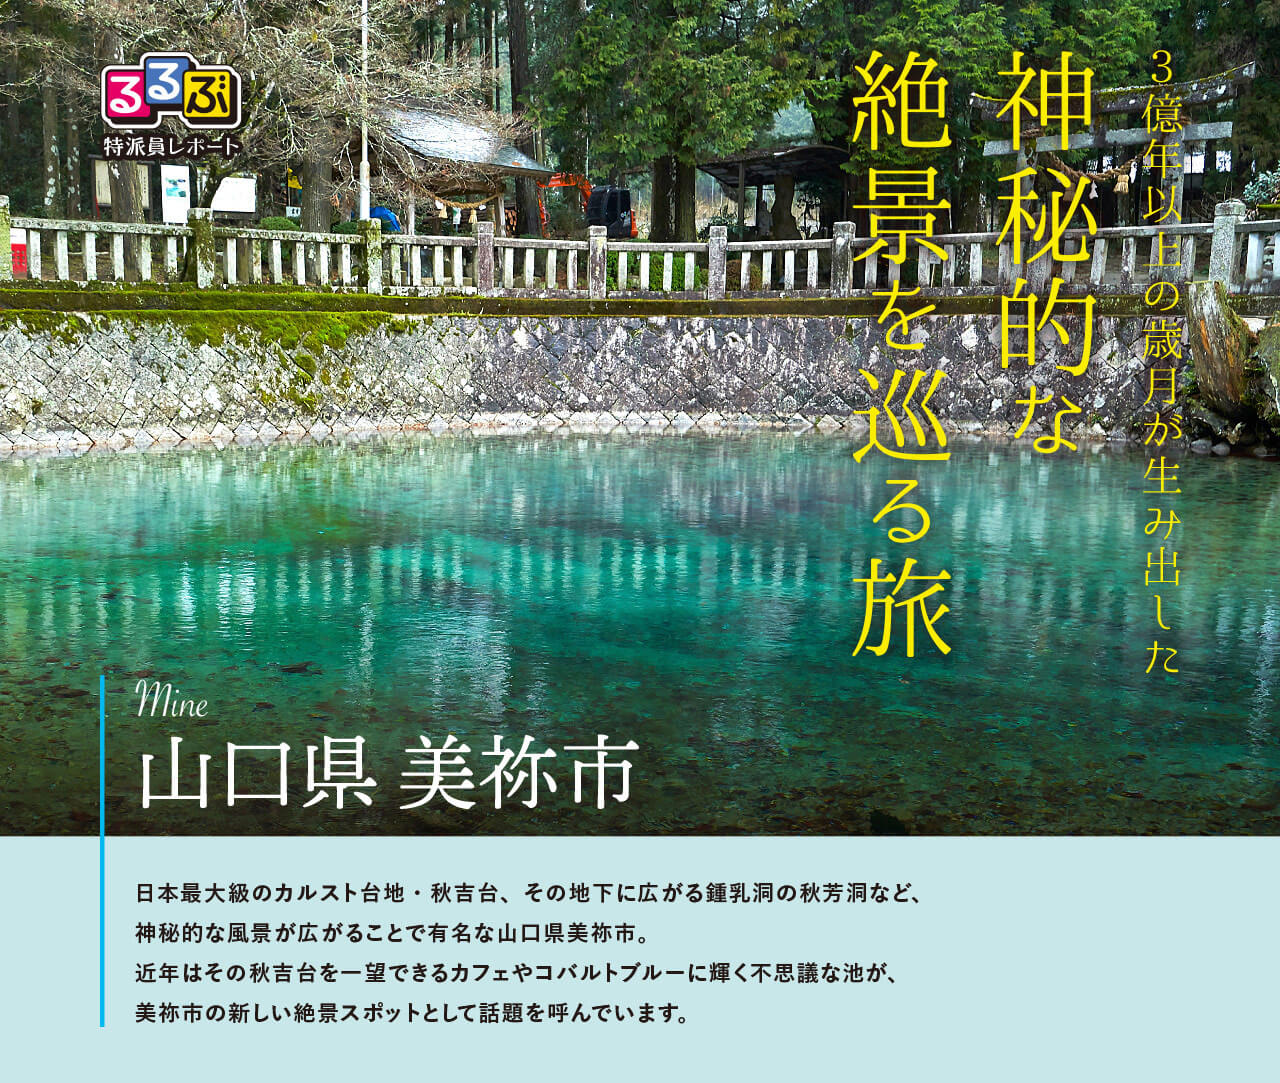 神秘的な絶景を巡る旅 | 山口県美祢市 の旅行レポート